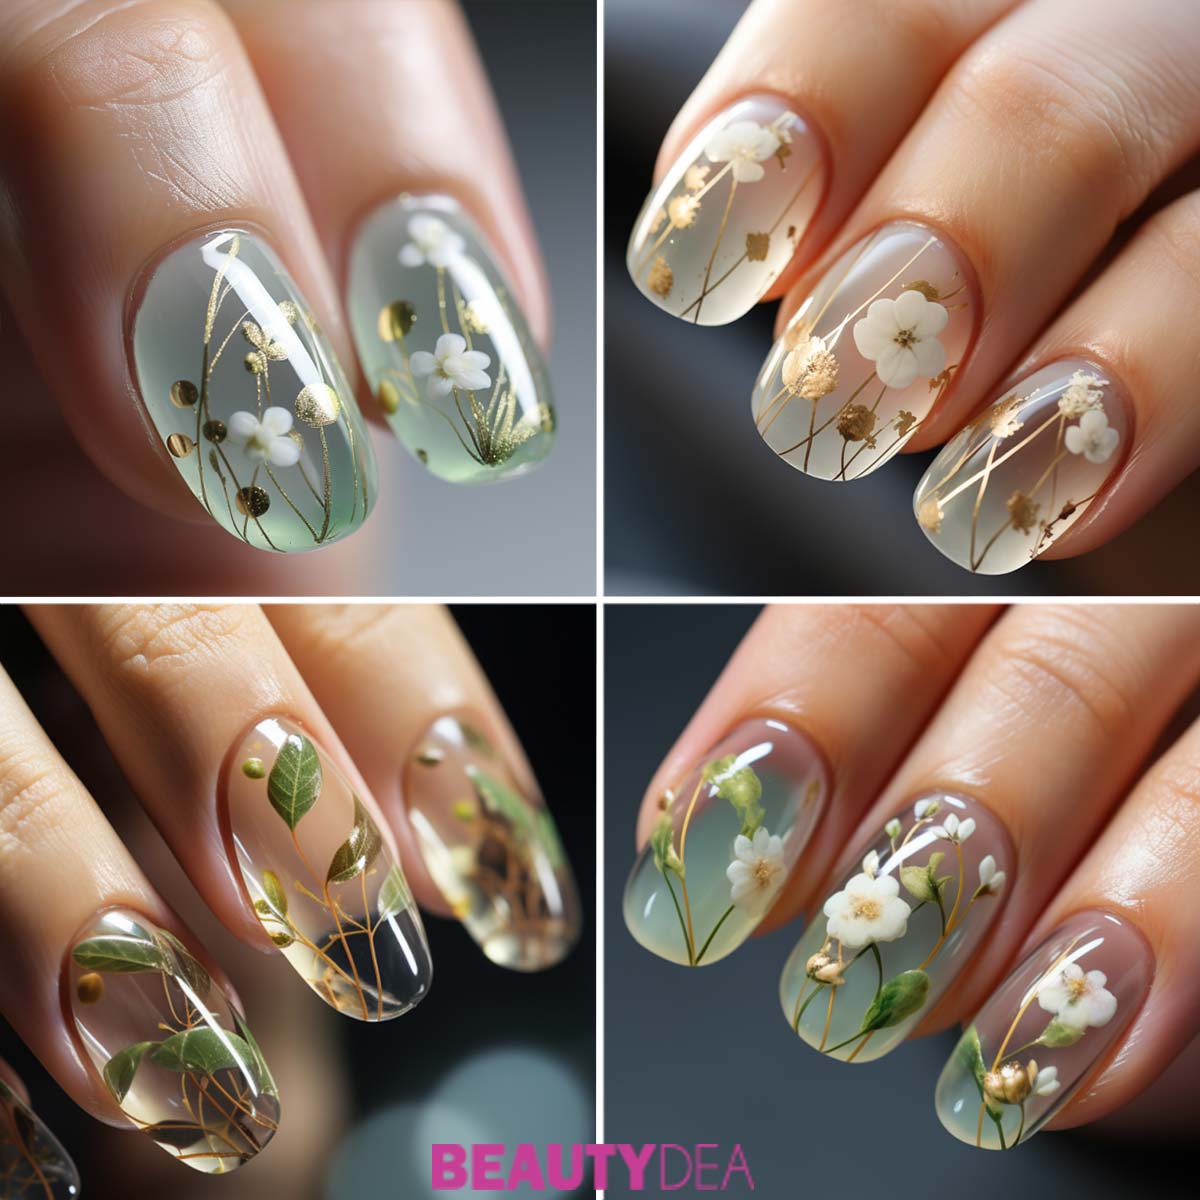 Nail art trasparenti unghie con fiori